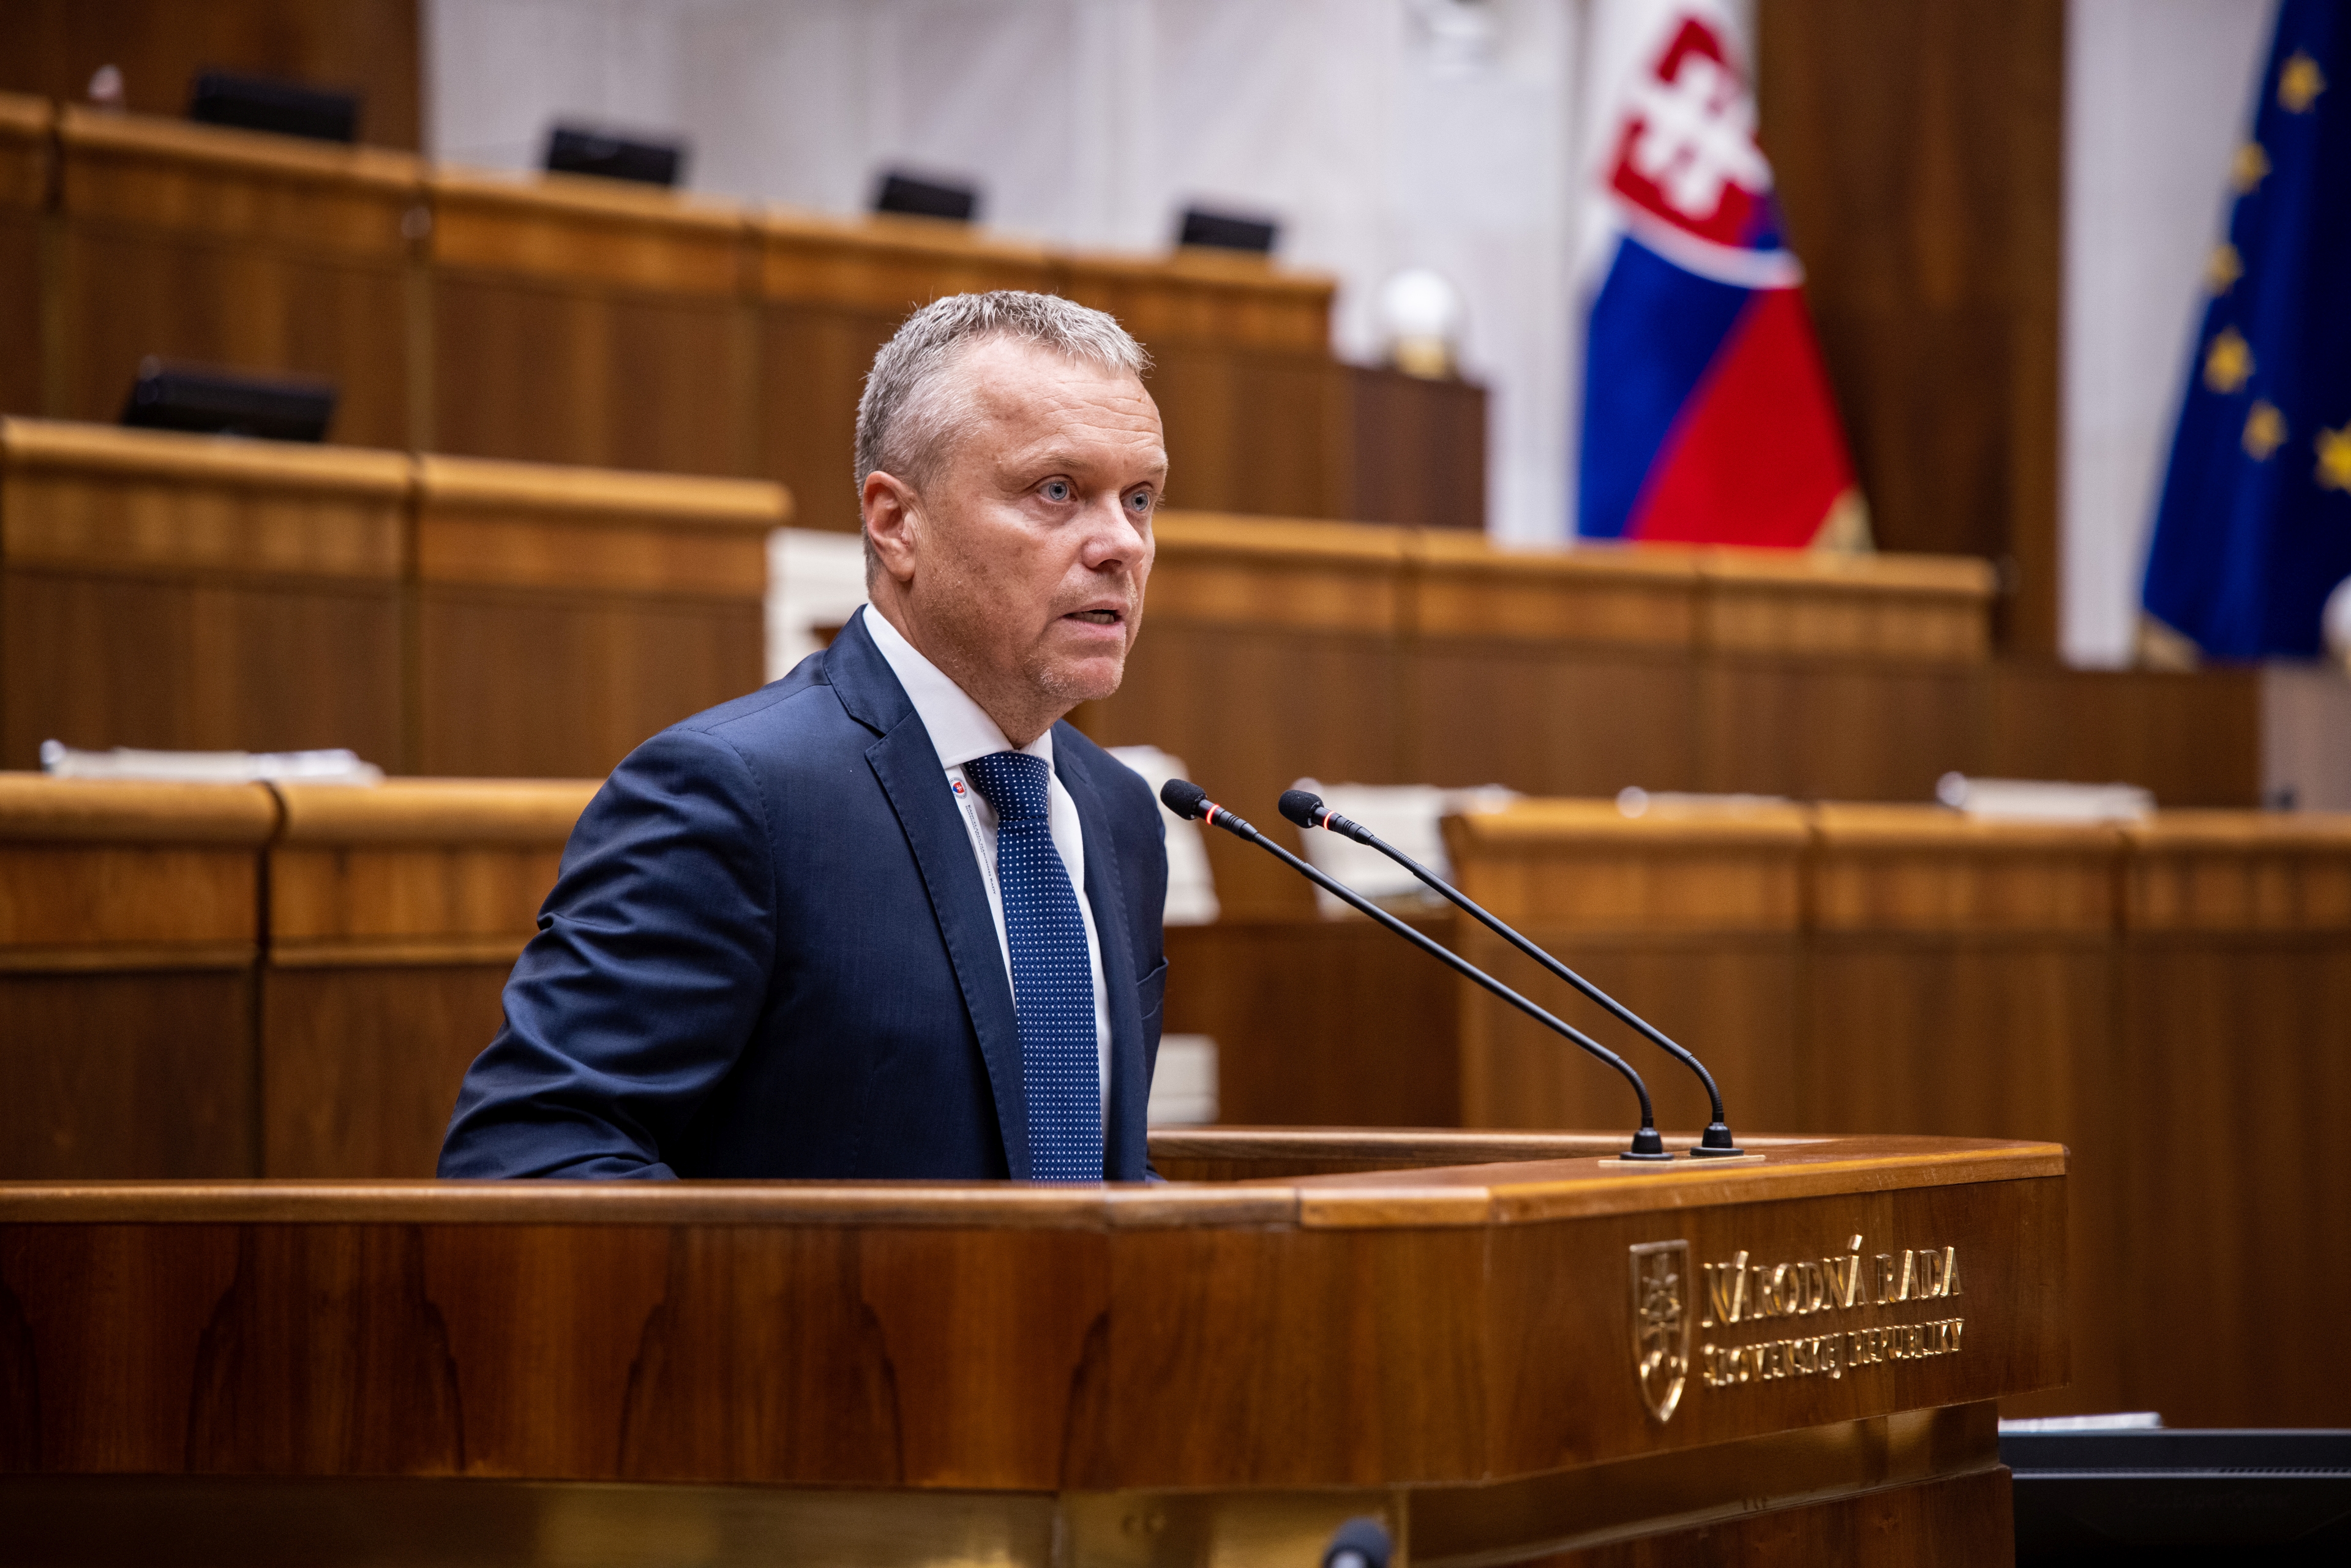 Mr Andrassy, head of SAO Slovakia in the Slovak parliament